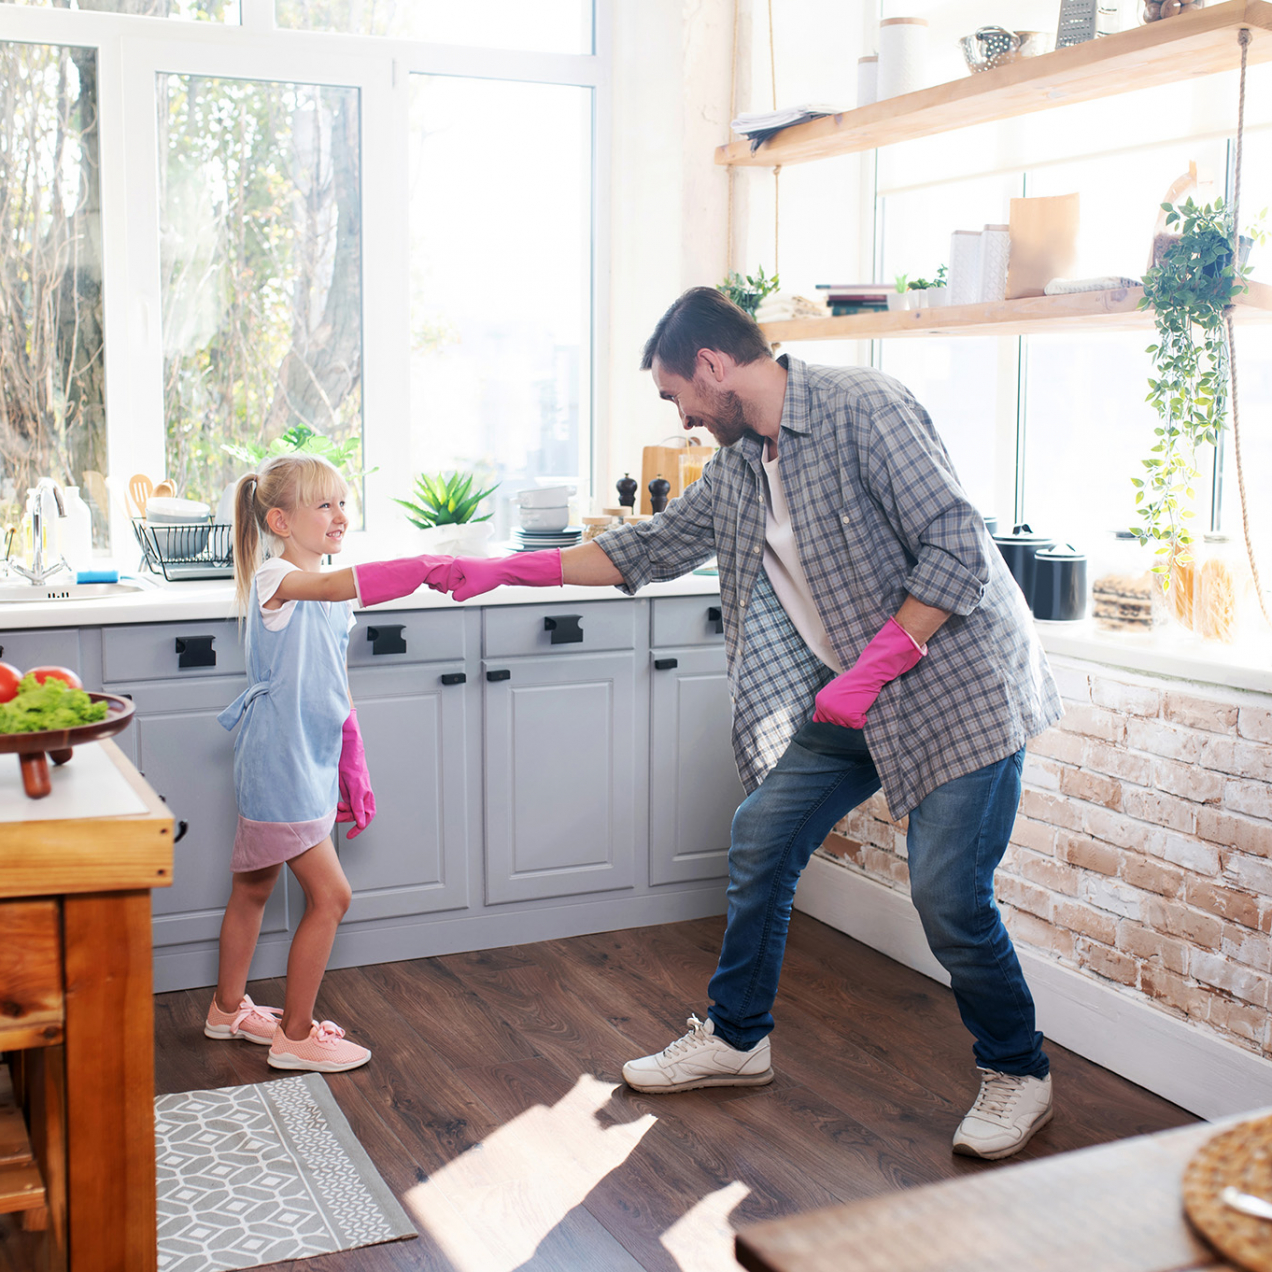 Les petits aides sont grands : comment impliquer tes enfants de manière ludique dans le ménage